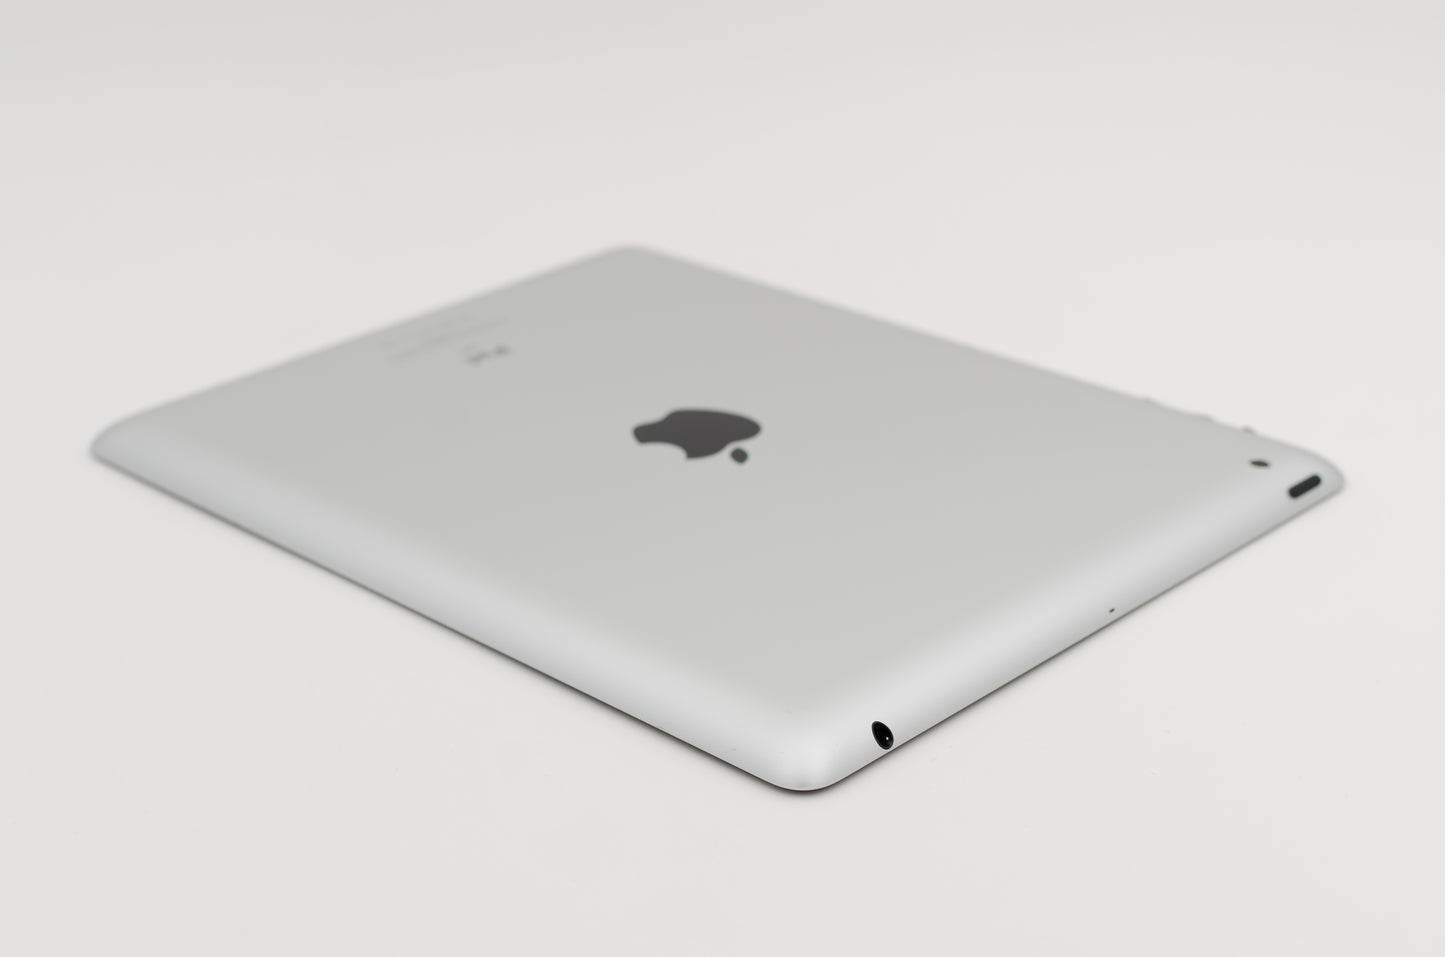 apple-2012-9.7-inch-ipad-2-a1397-silver/black-3